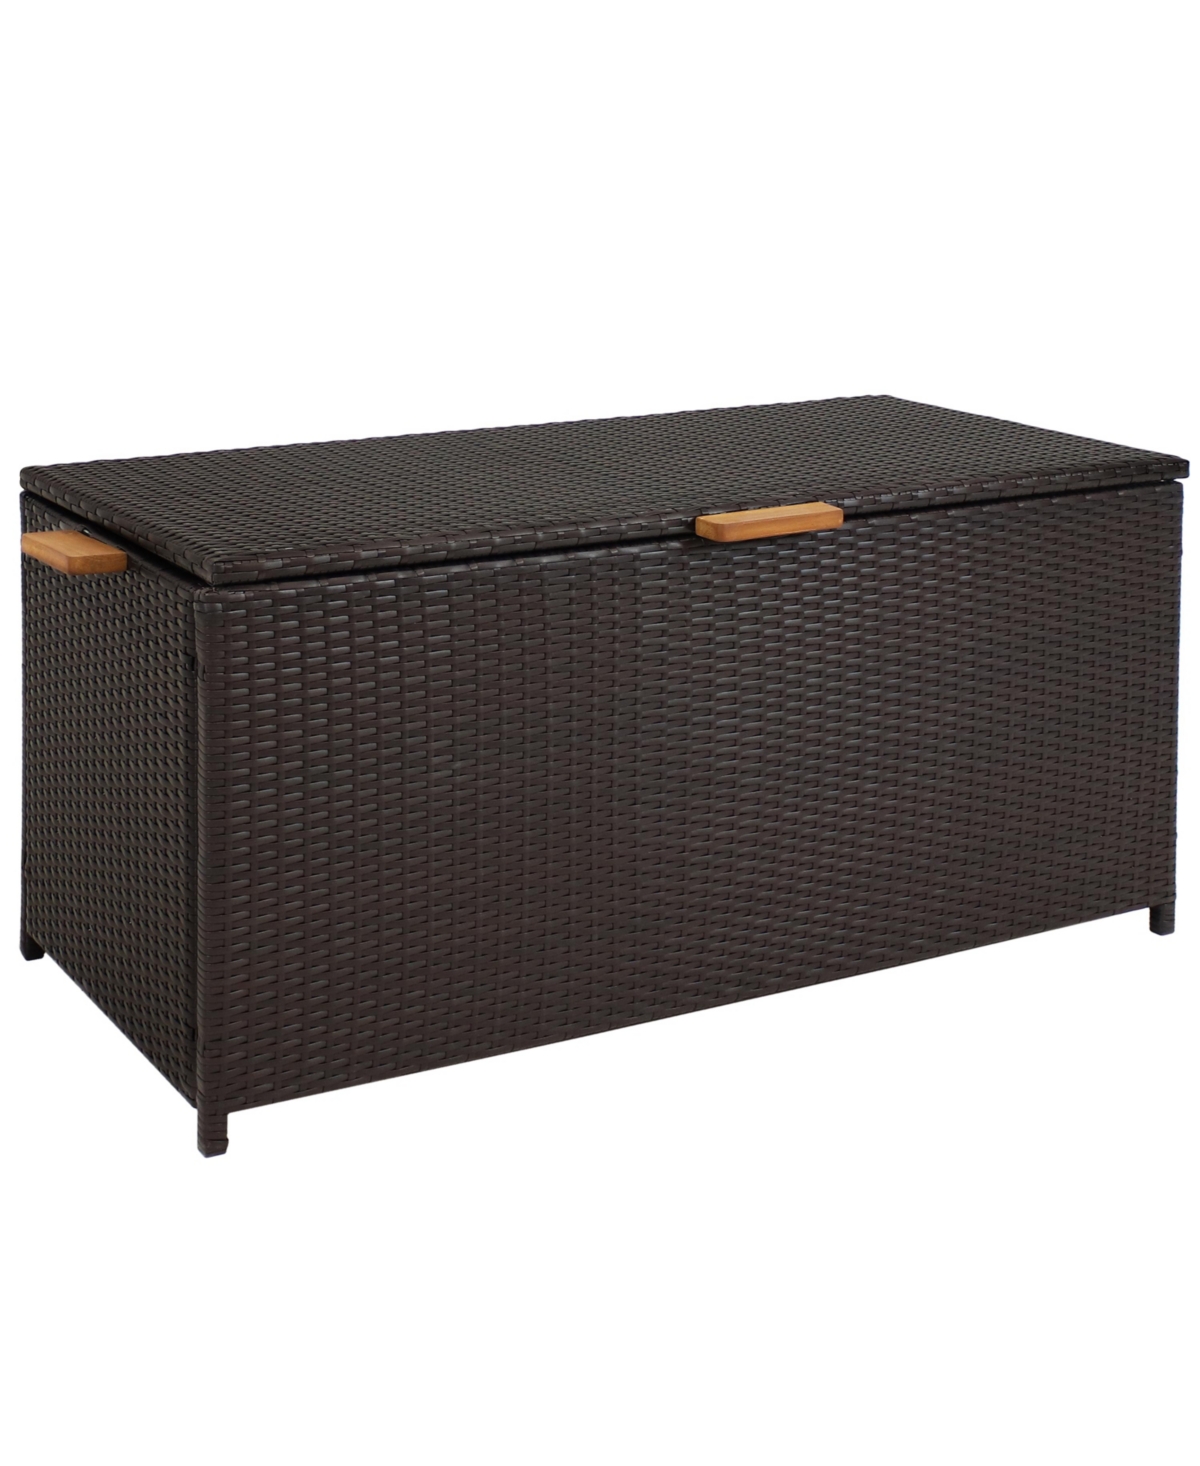 Resin Wicker Indoor/Outdoor Storage Deck Box with Handles - Brown - Brown